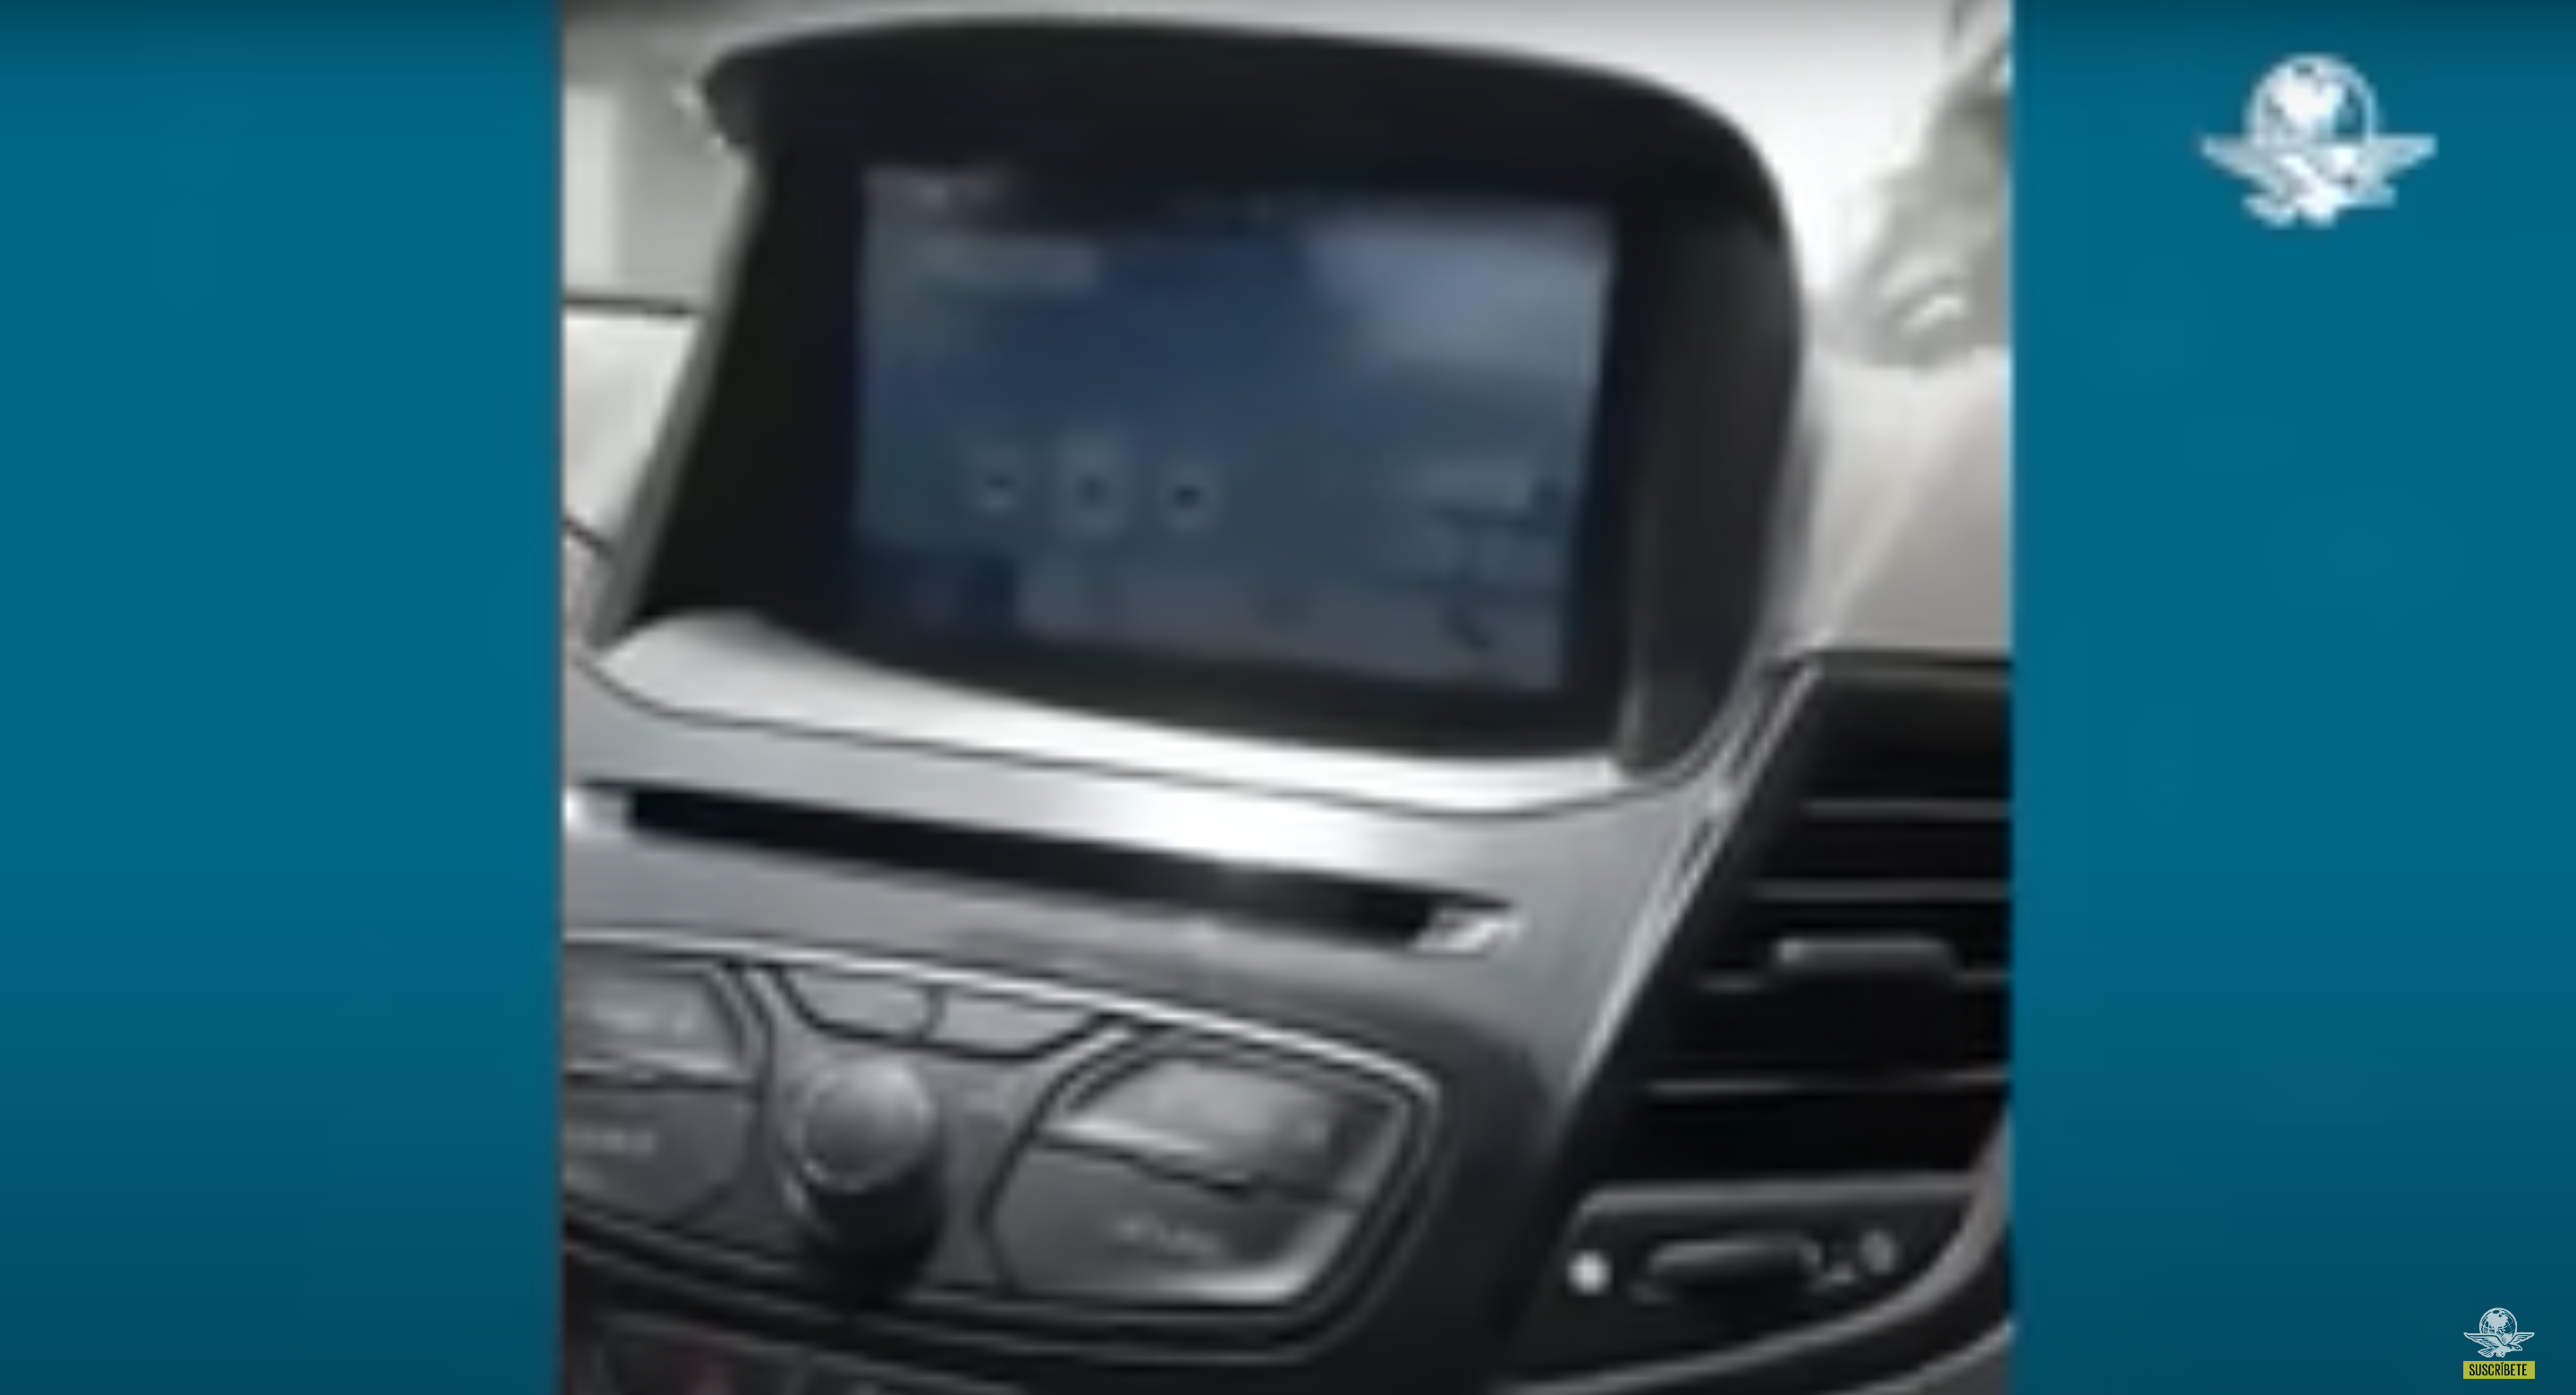 Der Ehemann bemerkte nicht, dass sein Telefon mit dem Bluetooth des Autos verbunden war. | Quelle: YouTube.com/El Universal